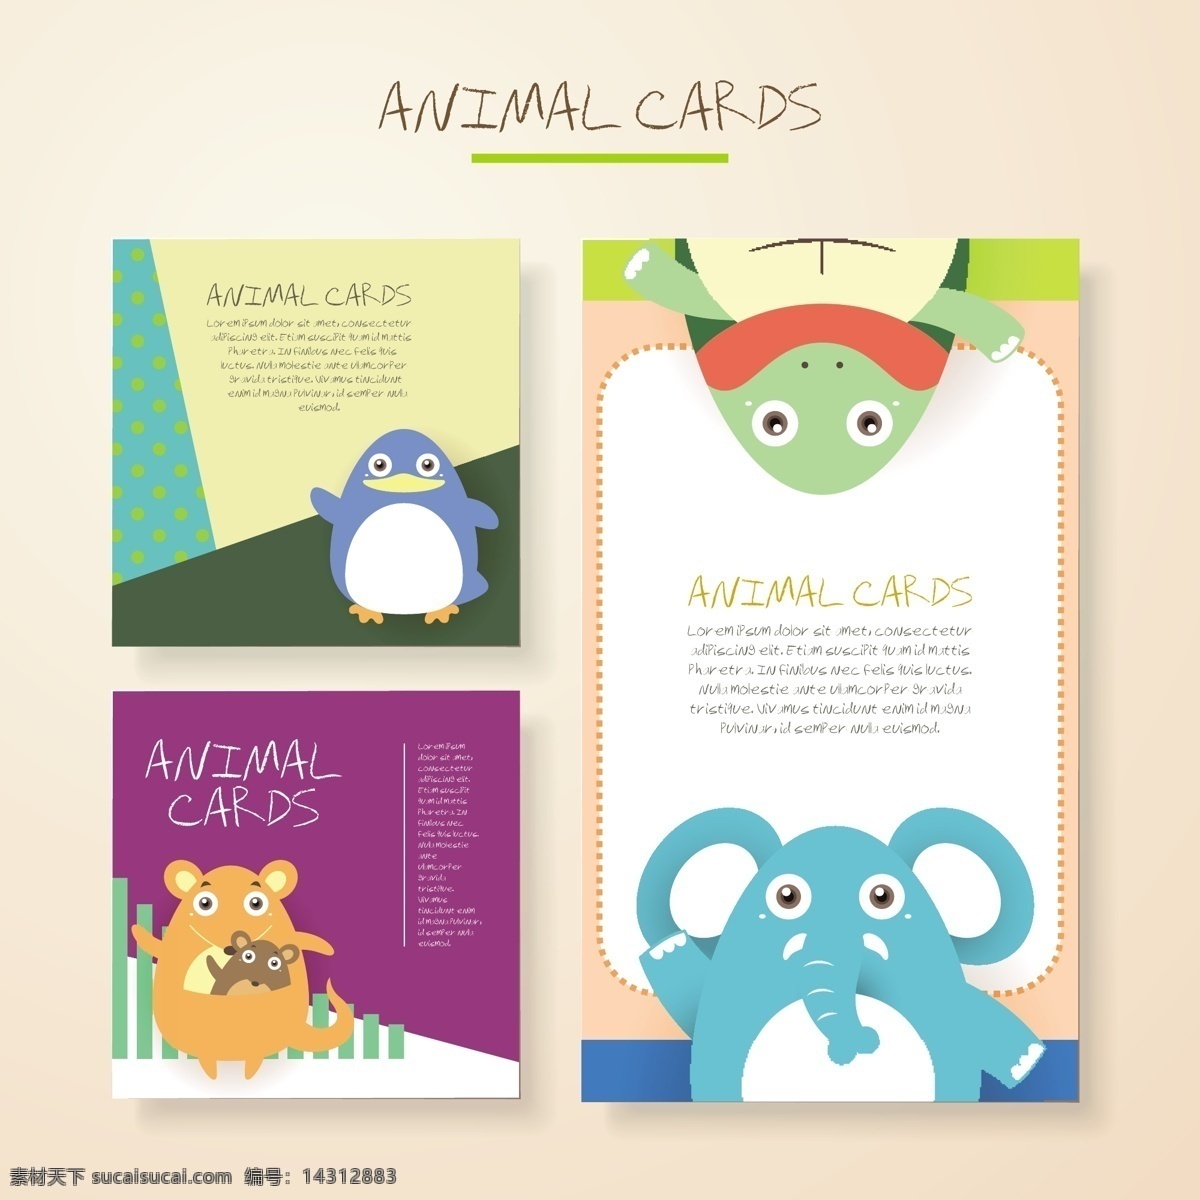 蓝色 大象 可爱 卡通 动物 卡片 矢量 填充背景 手绘 矢量素材 平面设计素材